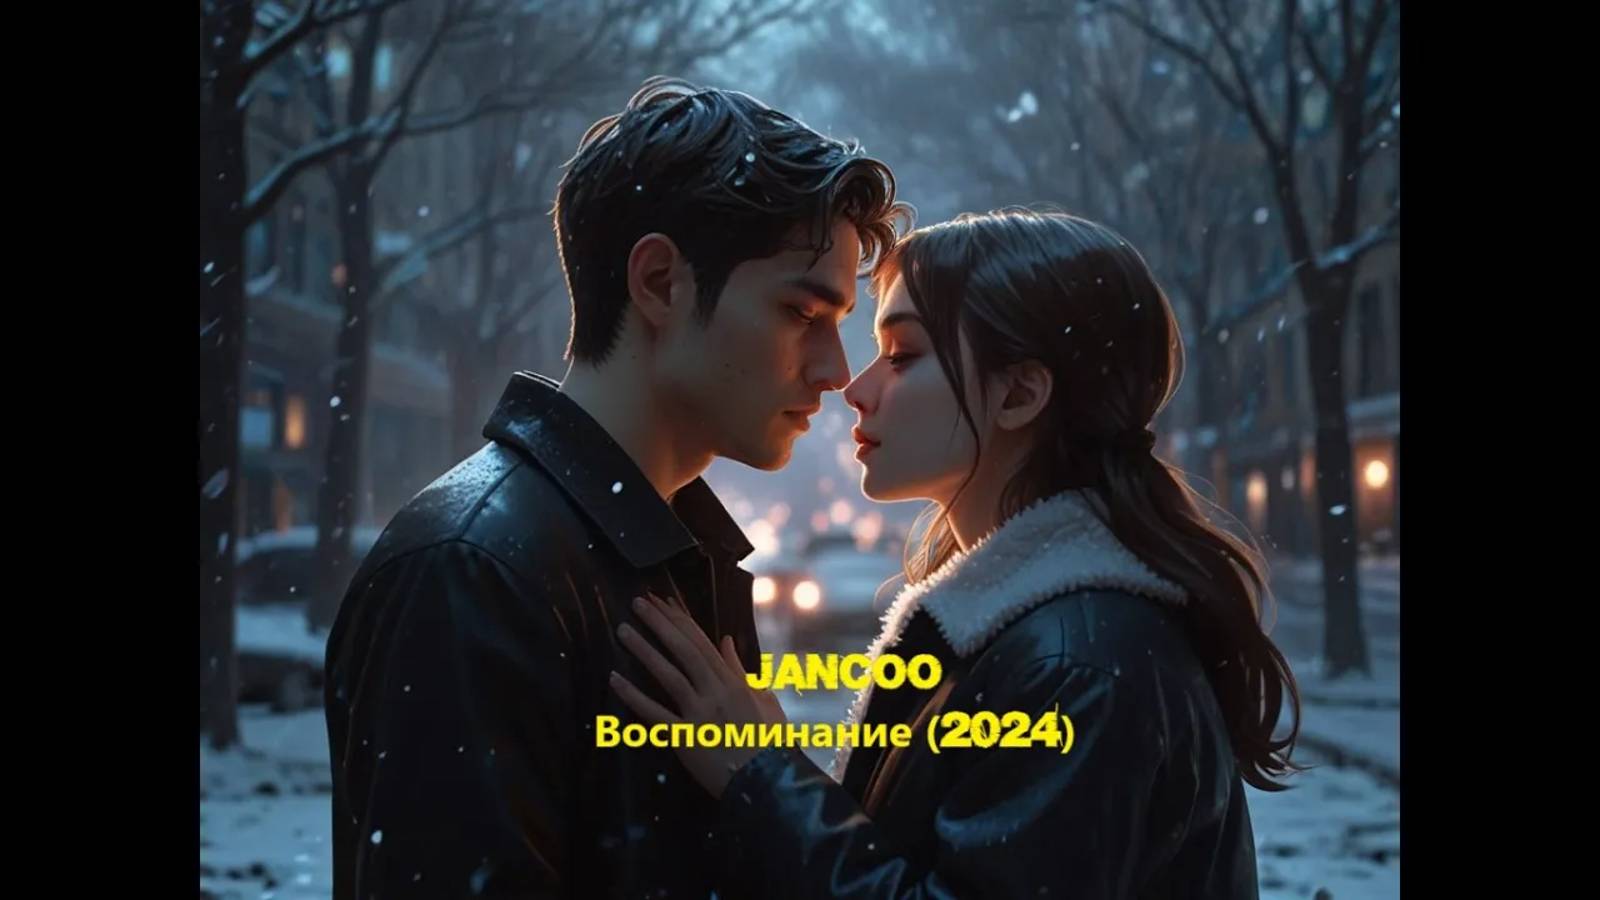 JanCoo - Воспоминание (2024)